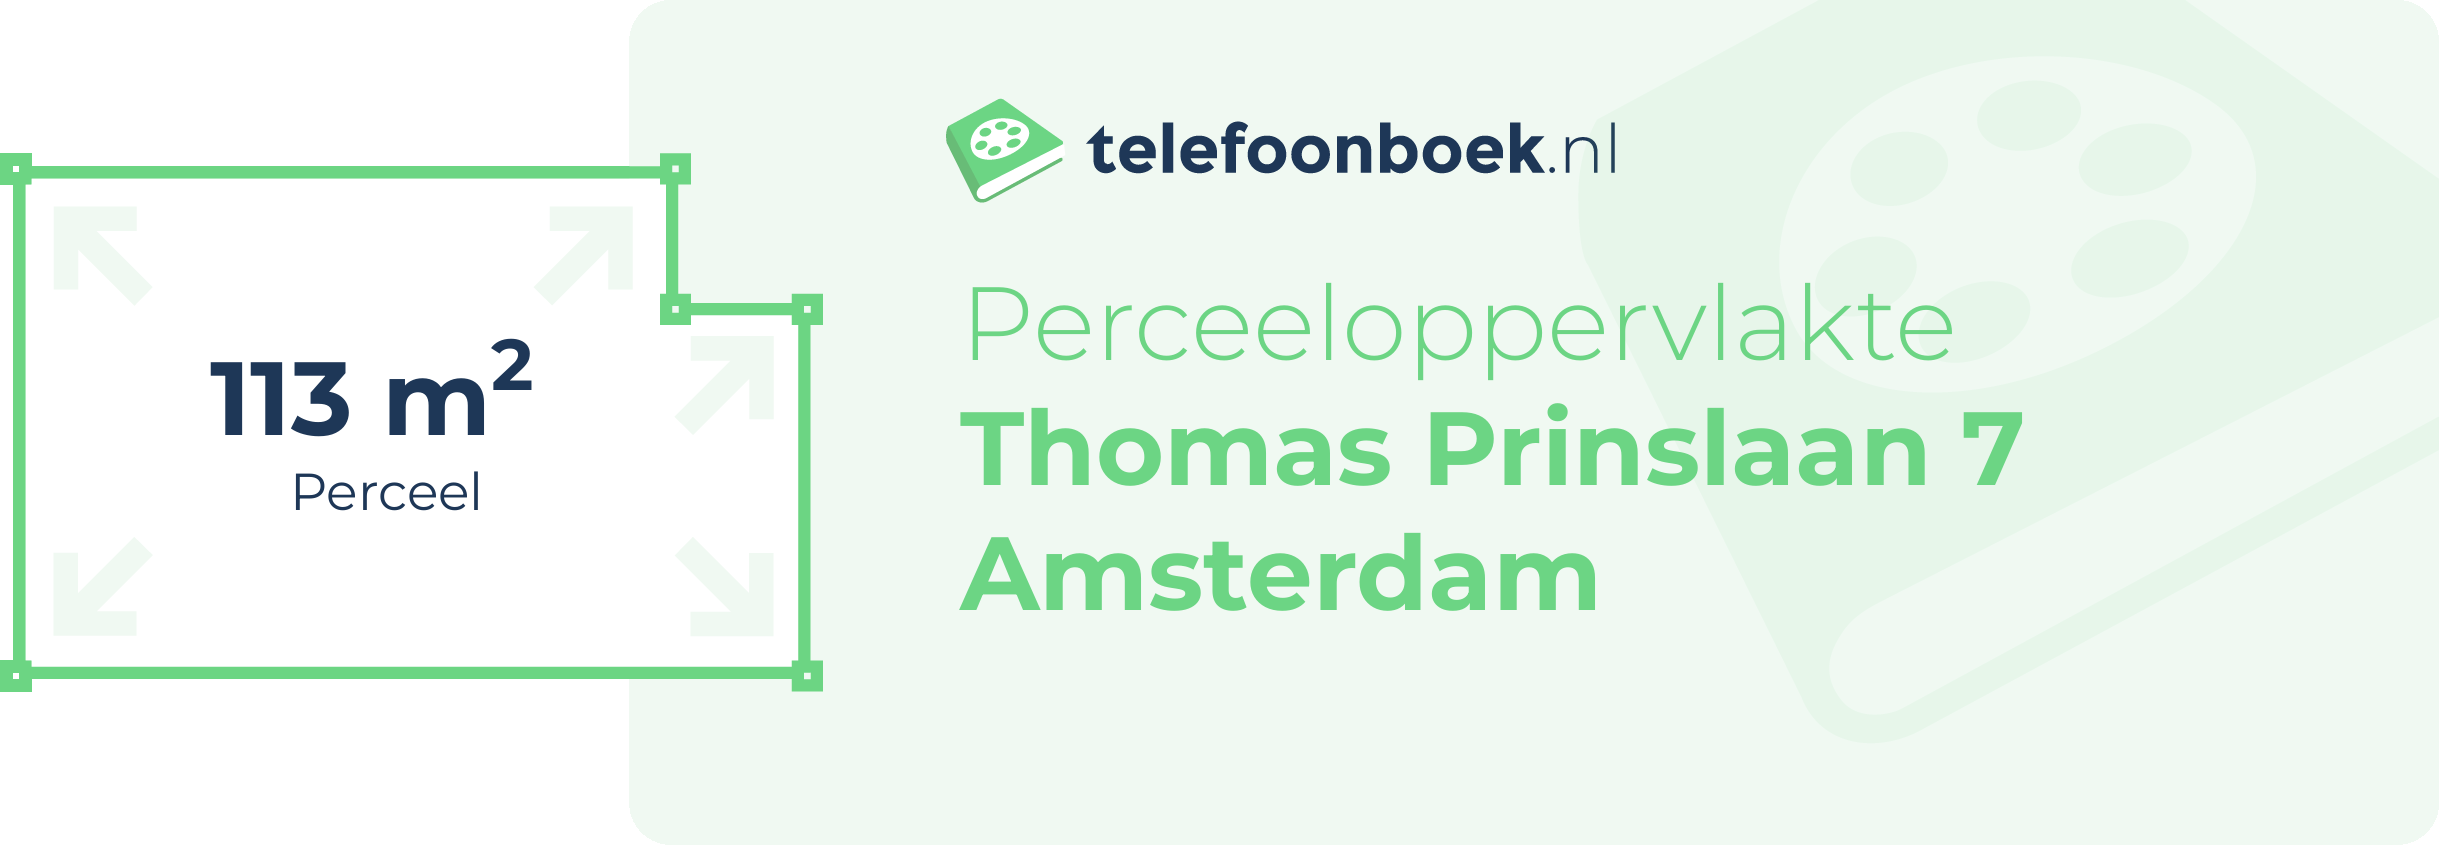 Perceeloppervlakte Thomas Prinslaan 7 Amsterdam